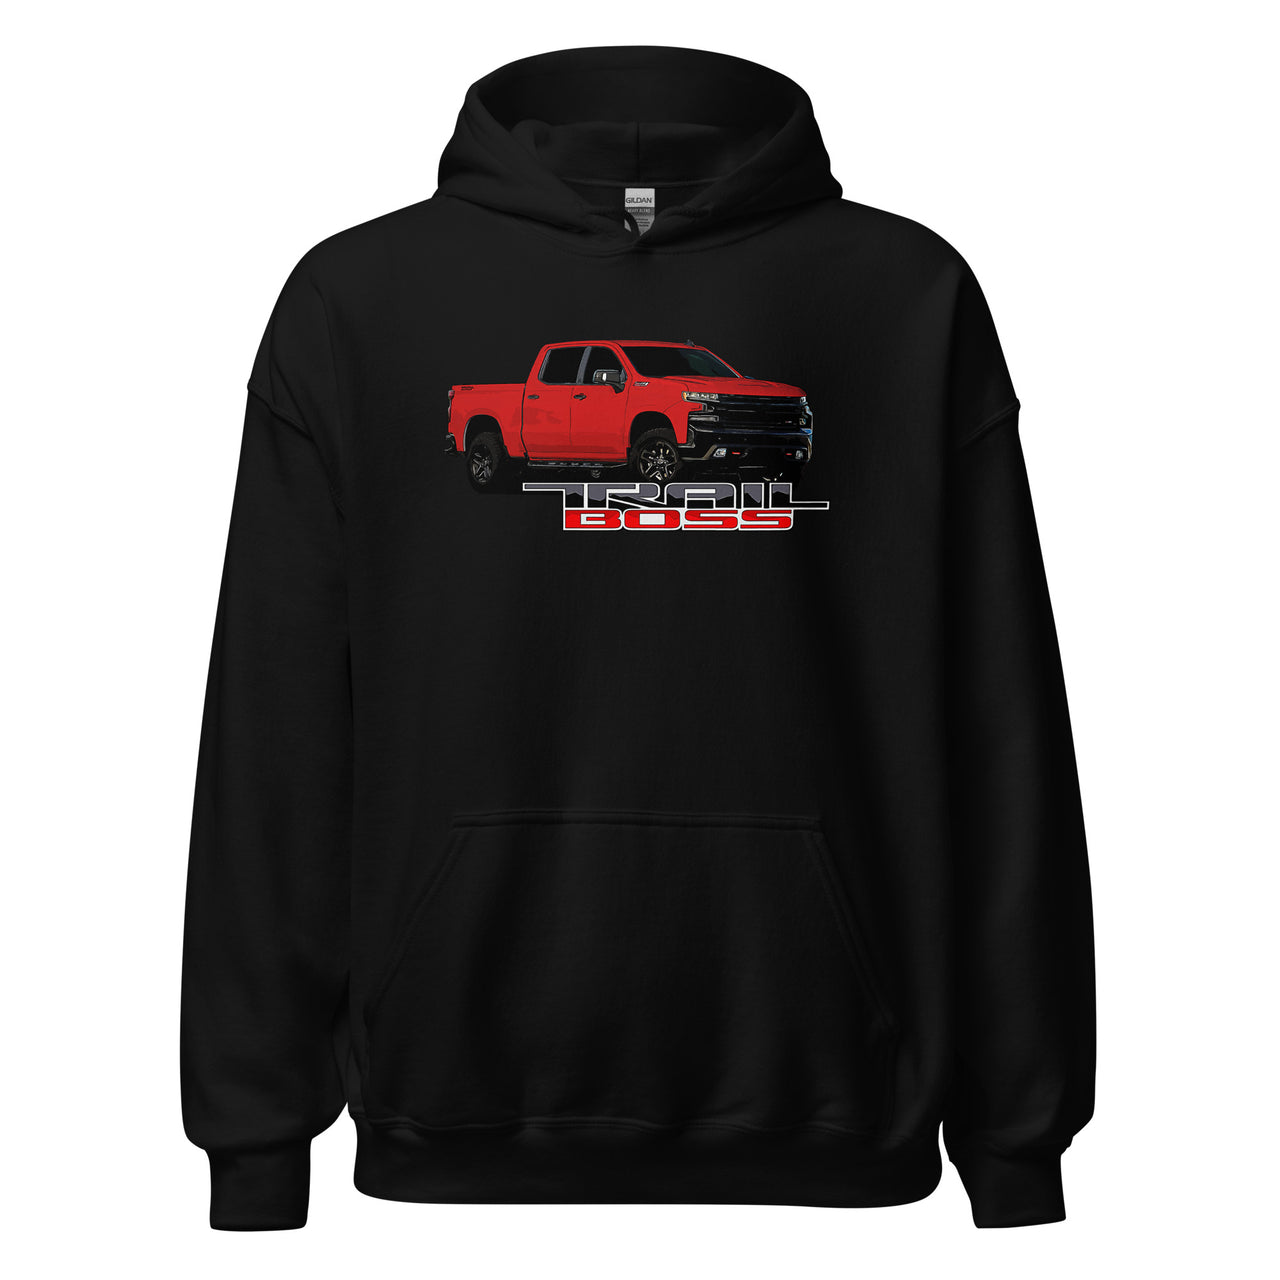 Red Trail Boss Truck Hoodie in black